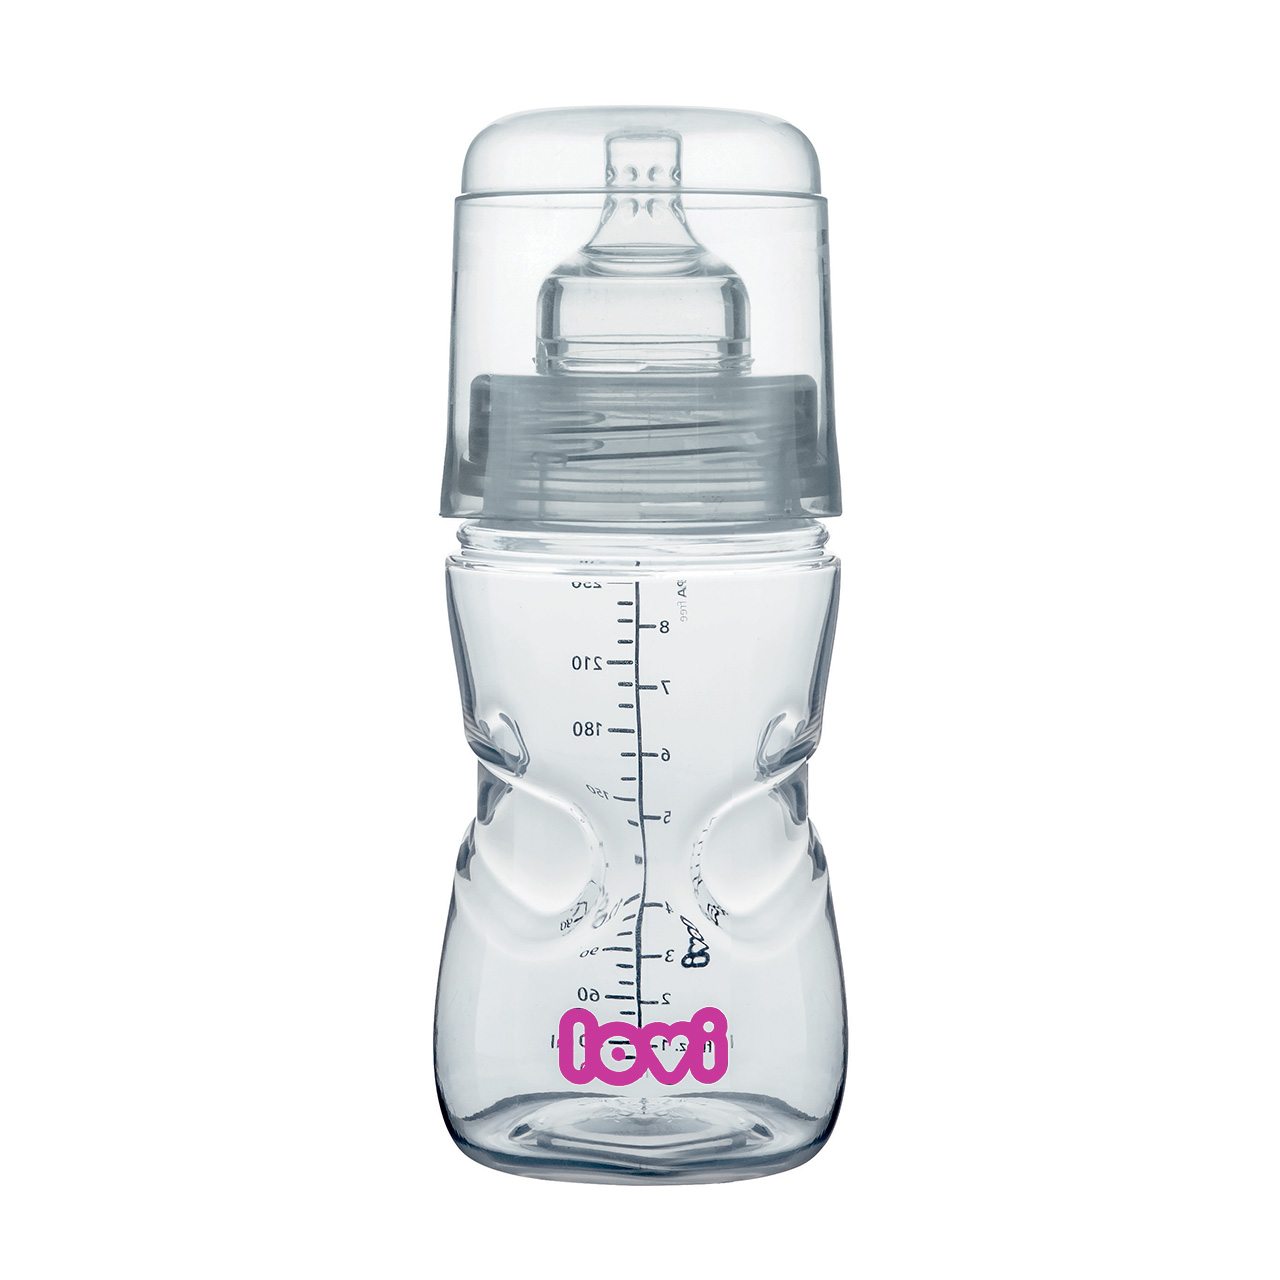 نکته خرید - قیمت روز شیشه شیر کودک لاوی مدل 21570 خرید